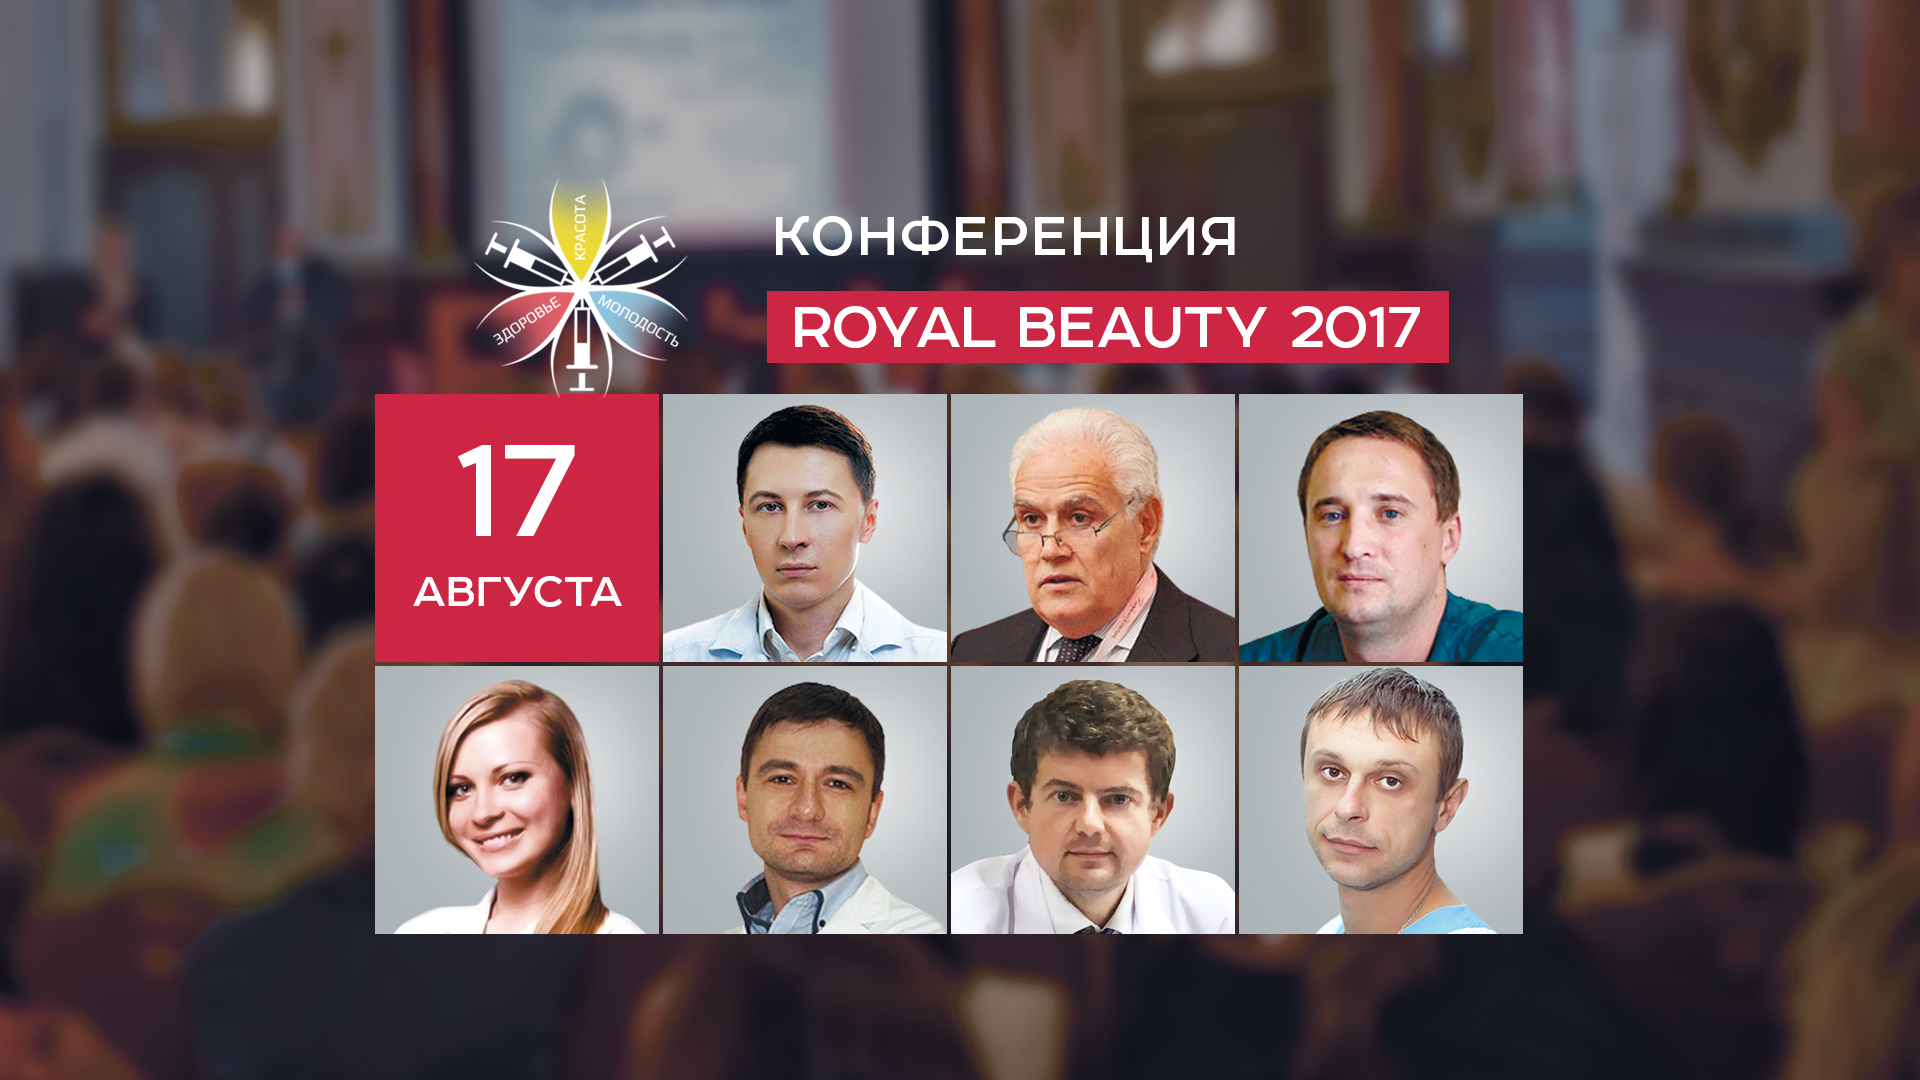 Royal Beauty 2017